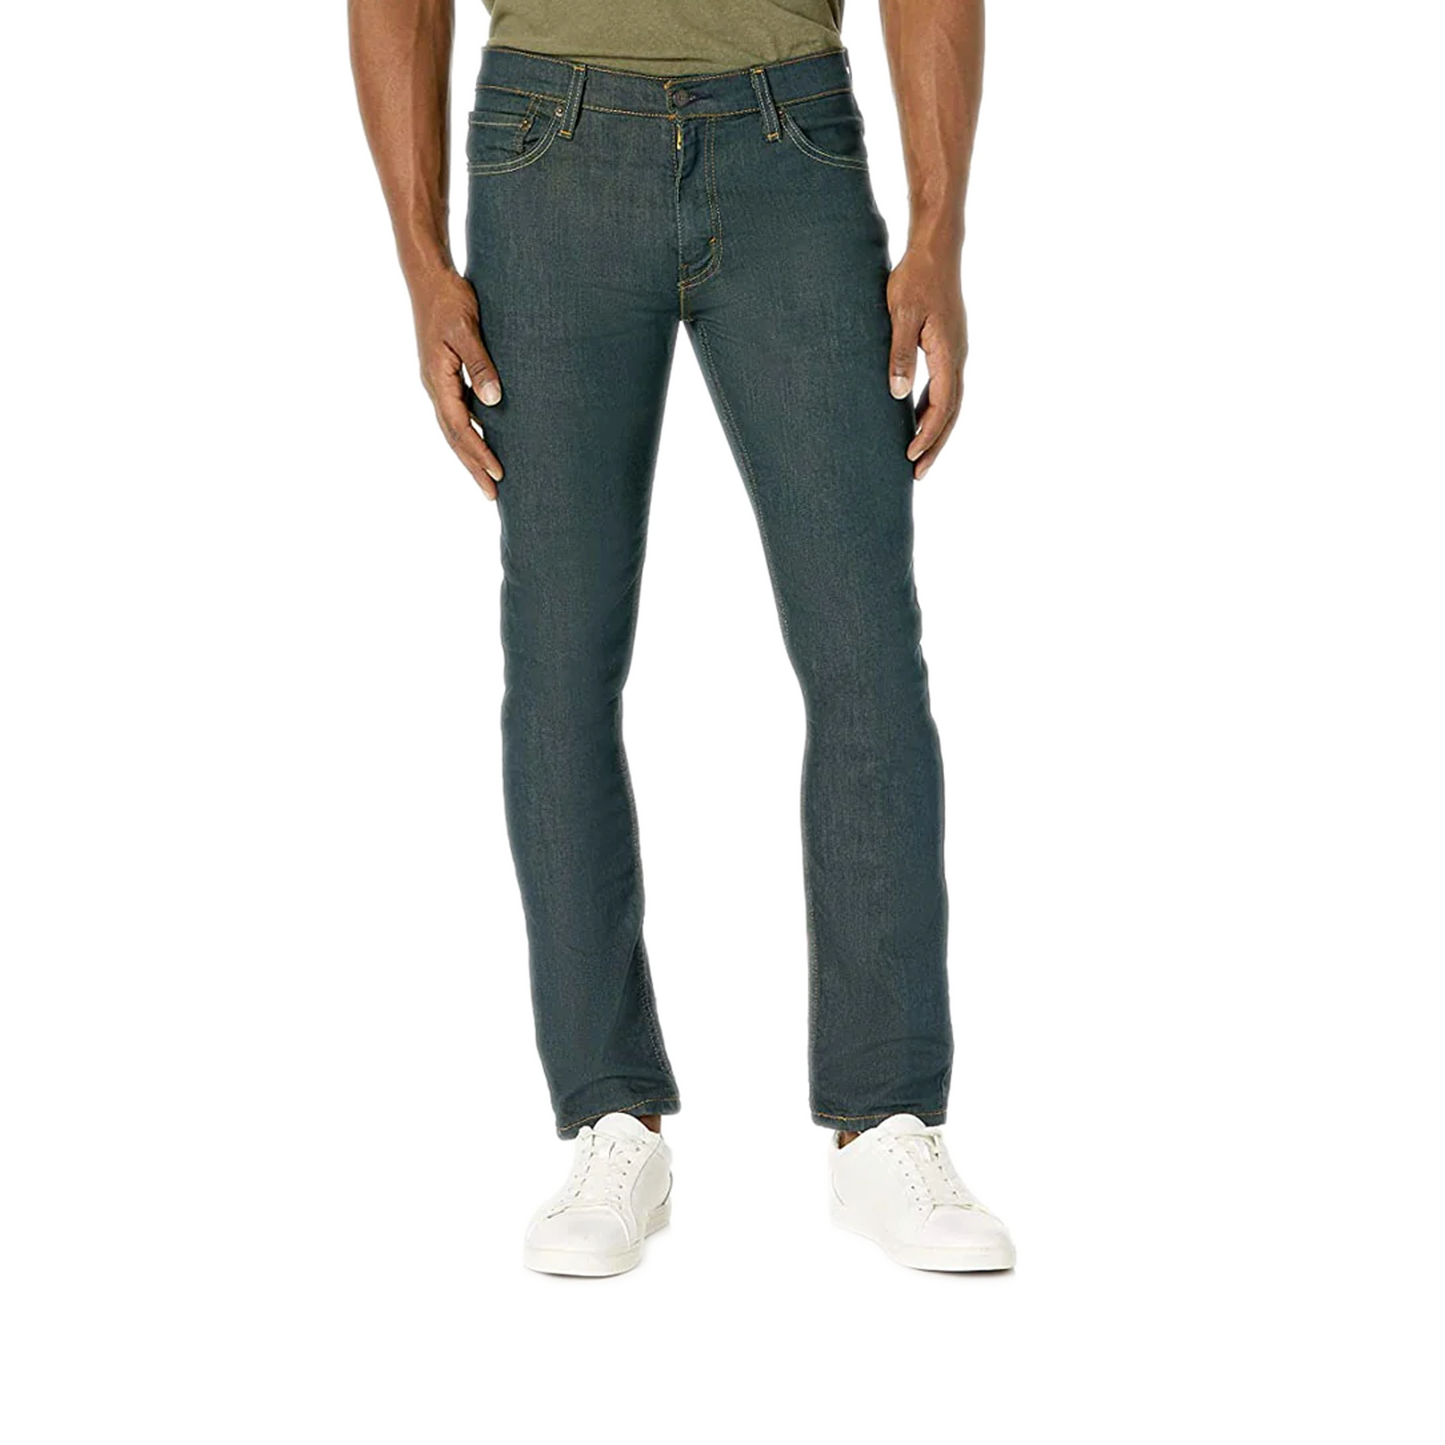 Men's Levi's 511 Slim Fit Jeans - Rinsed Playa